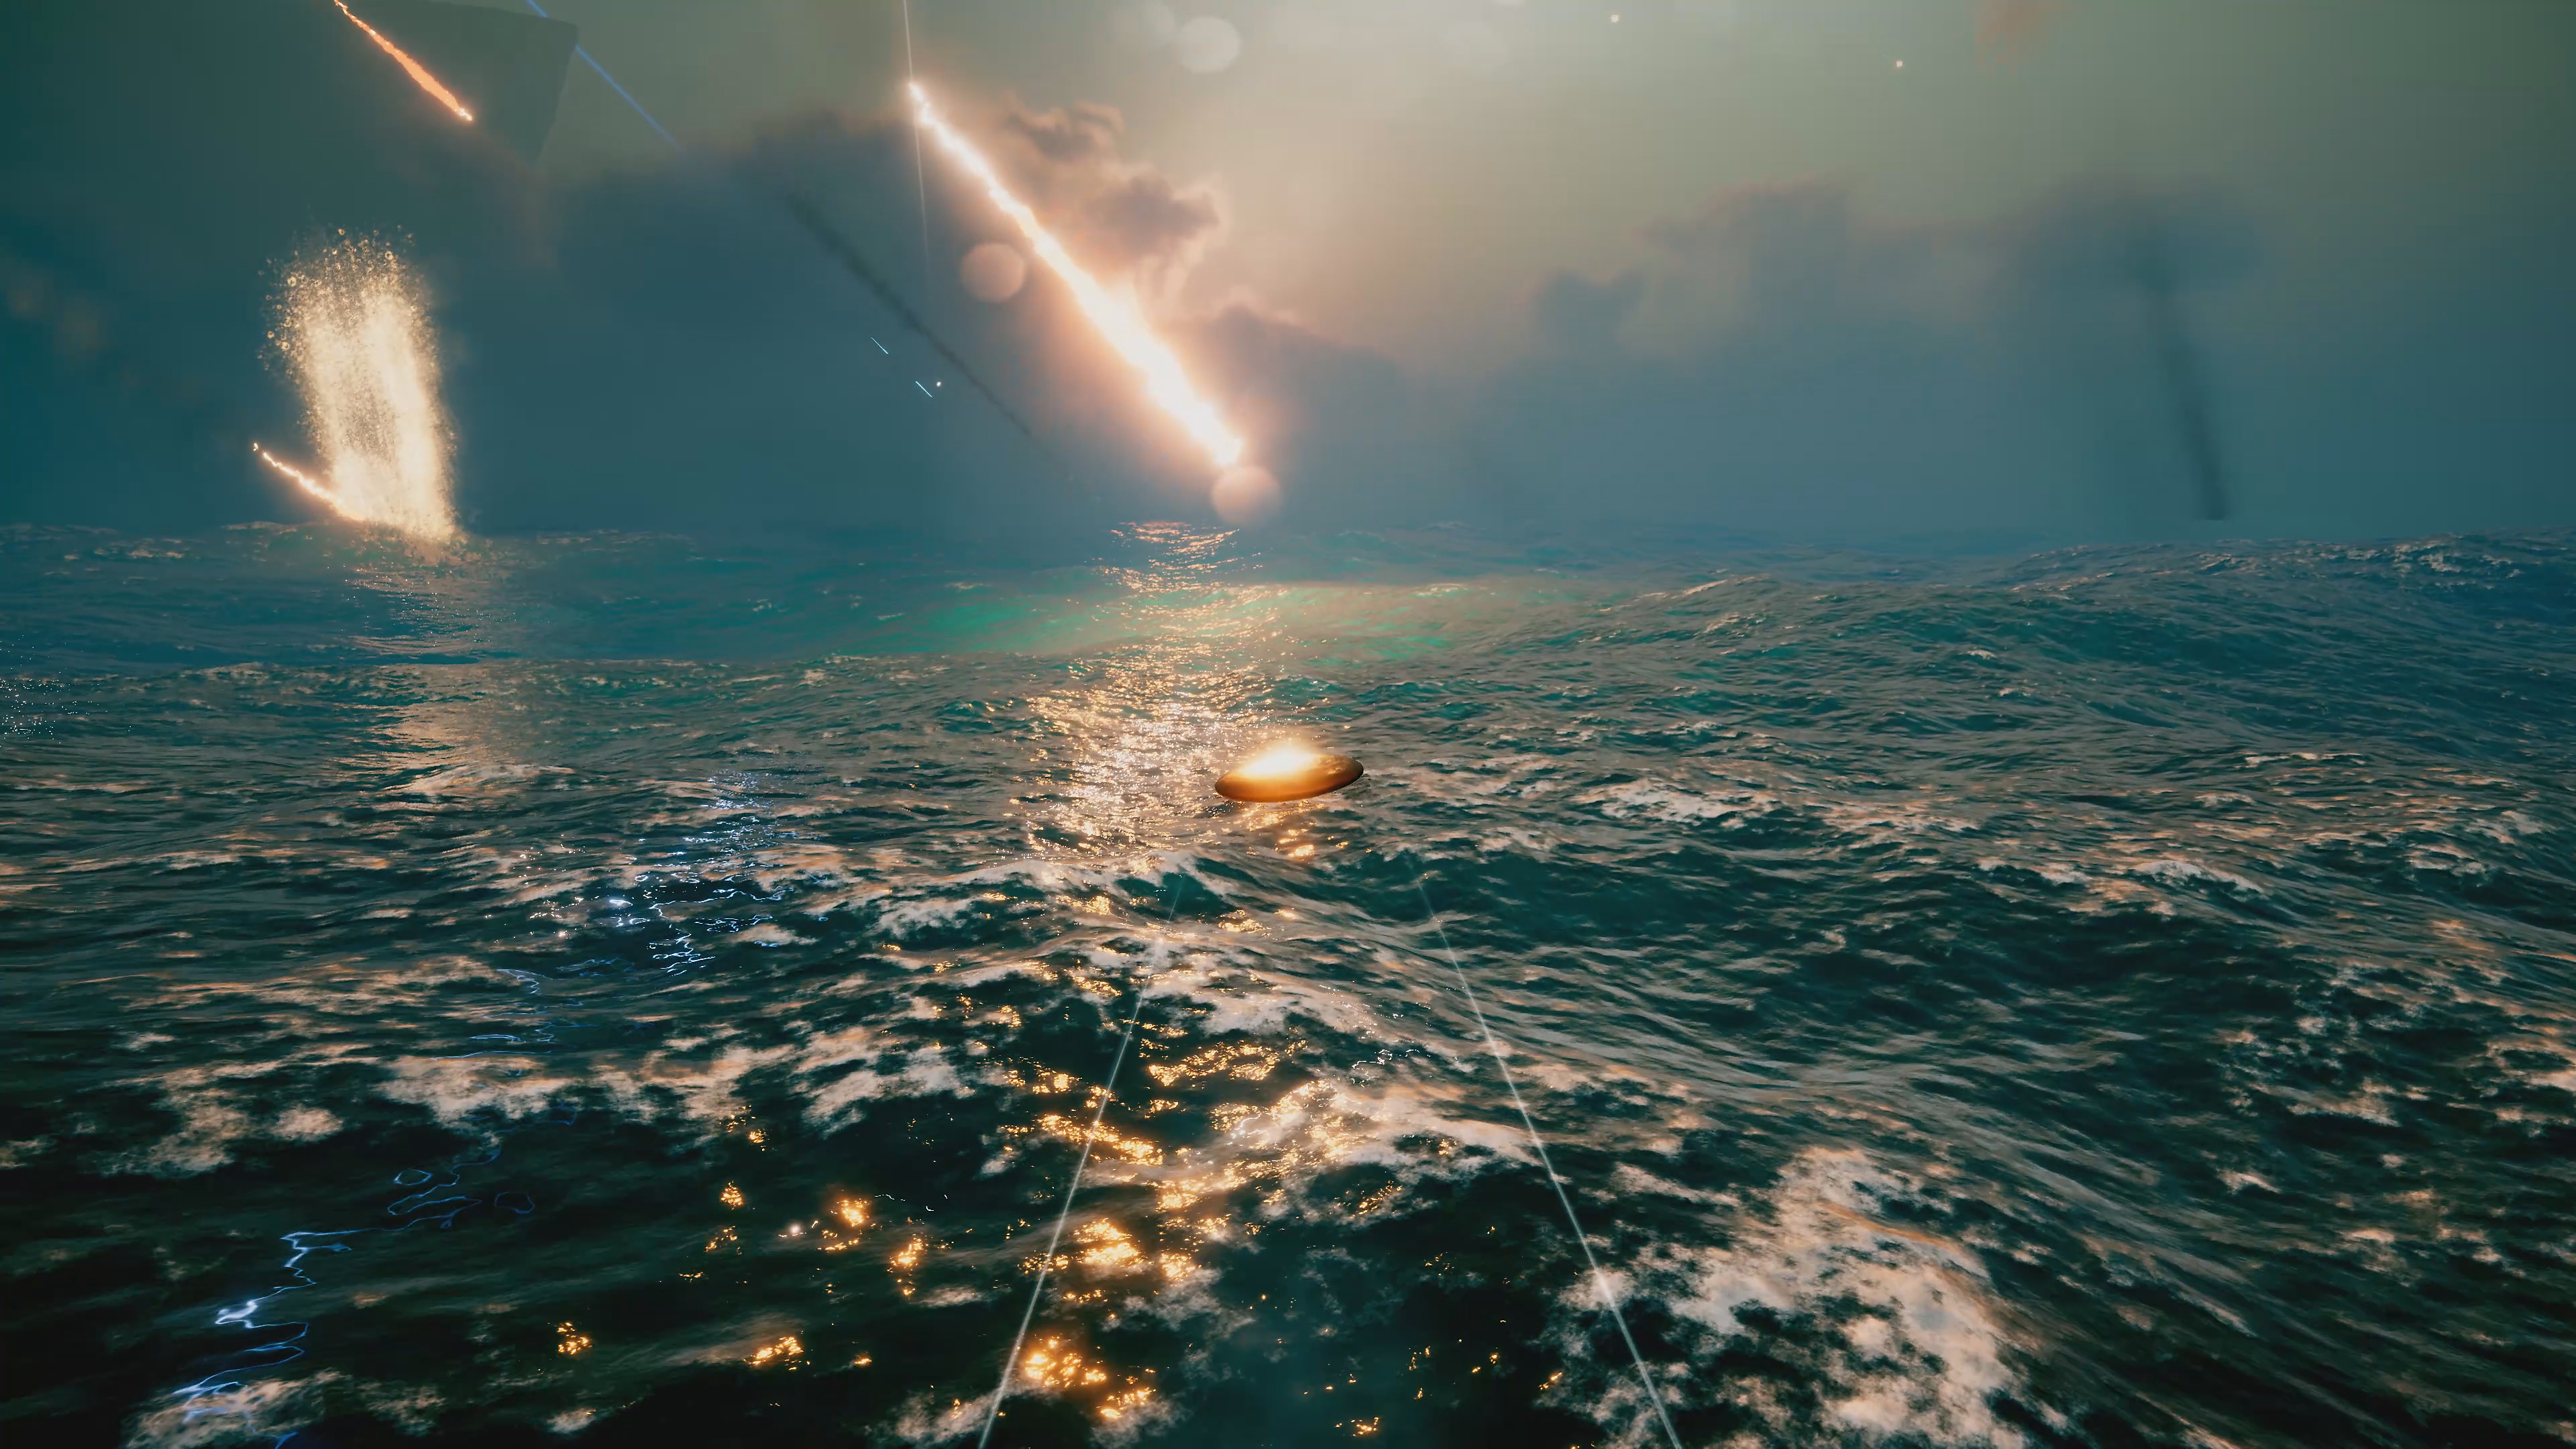 Exo One - captura de tela mostrando objeto voando sobre um oceano